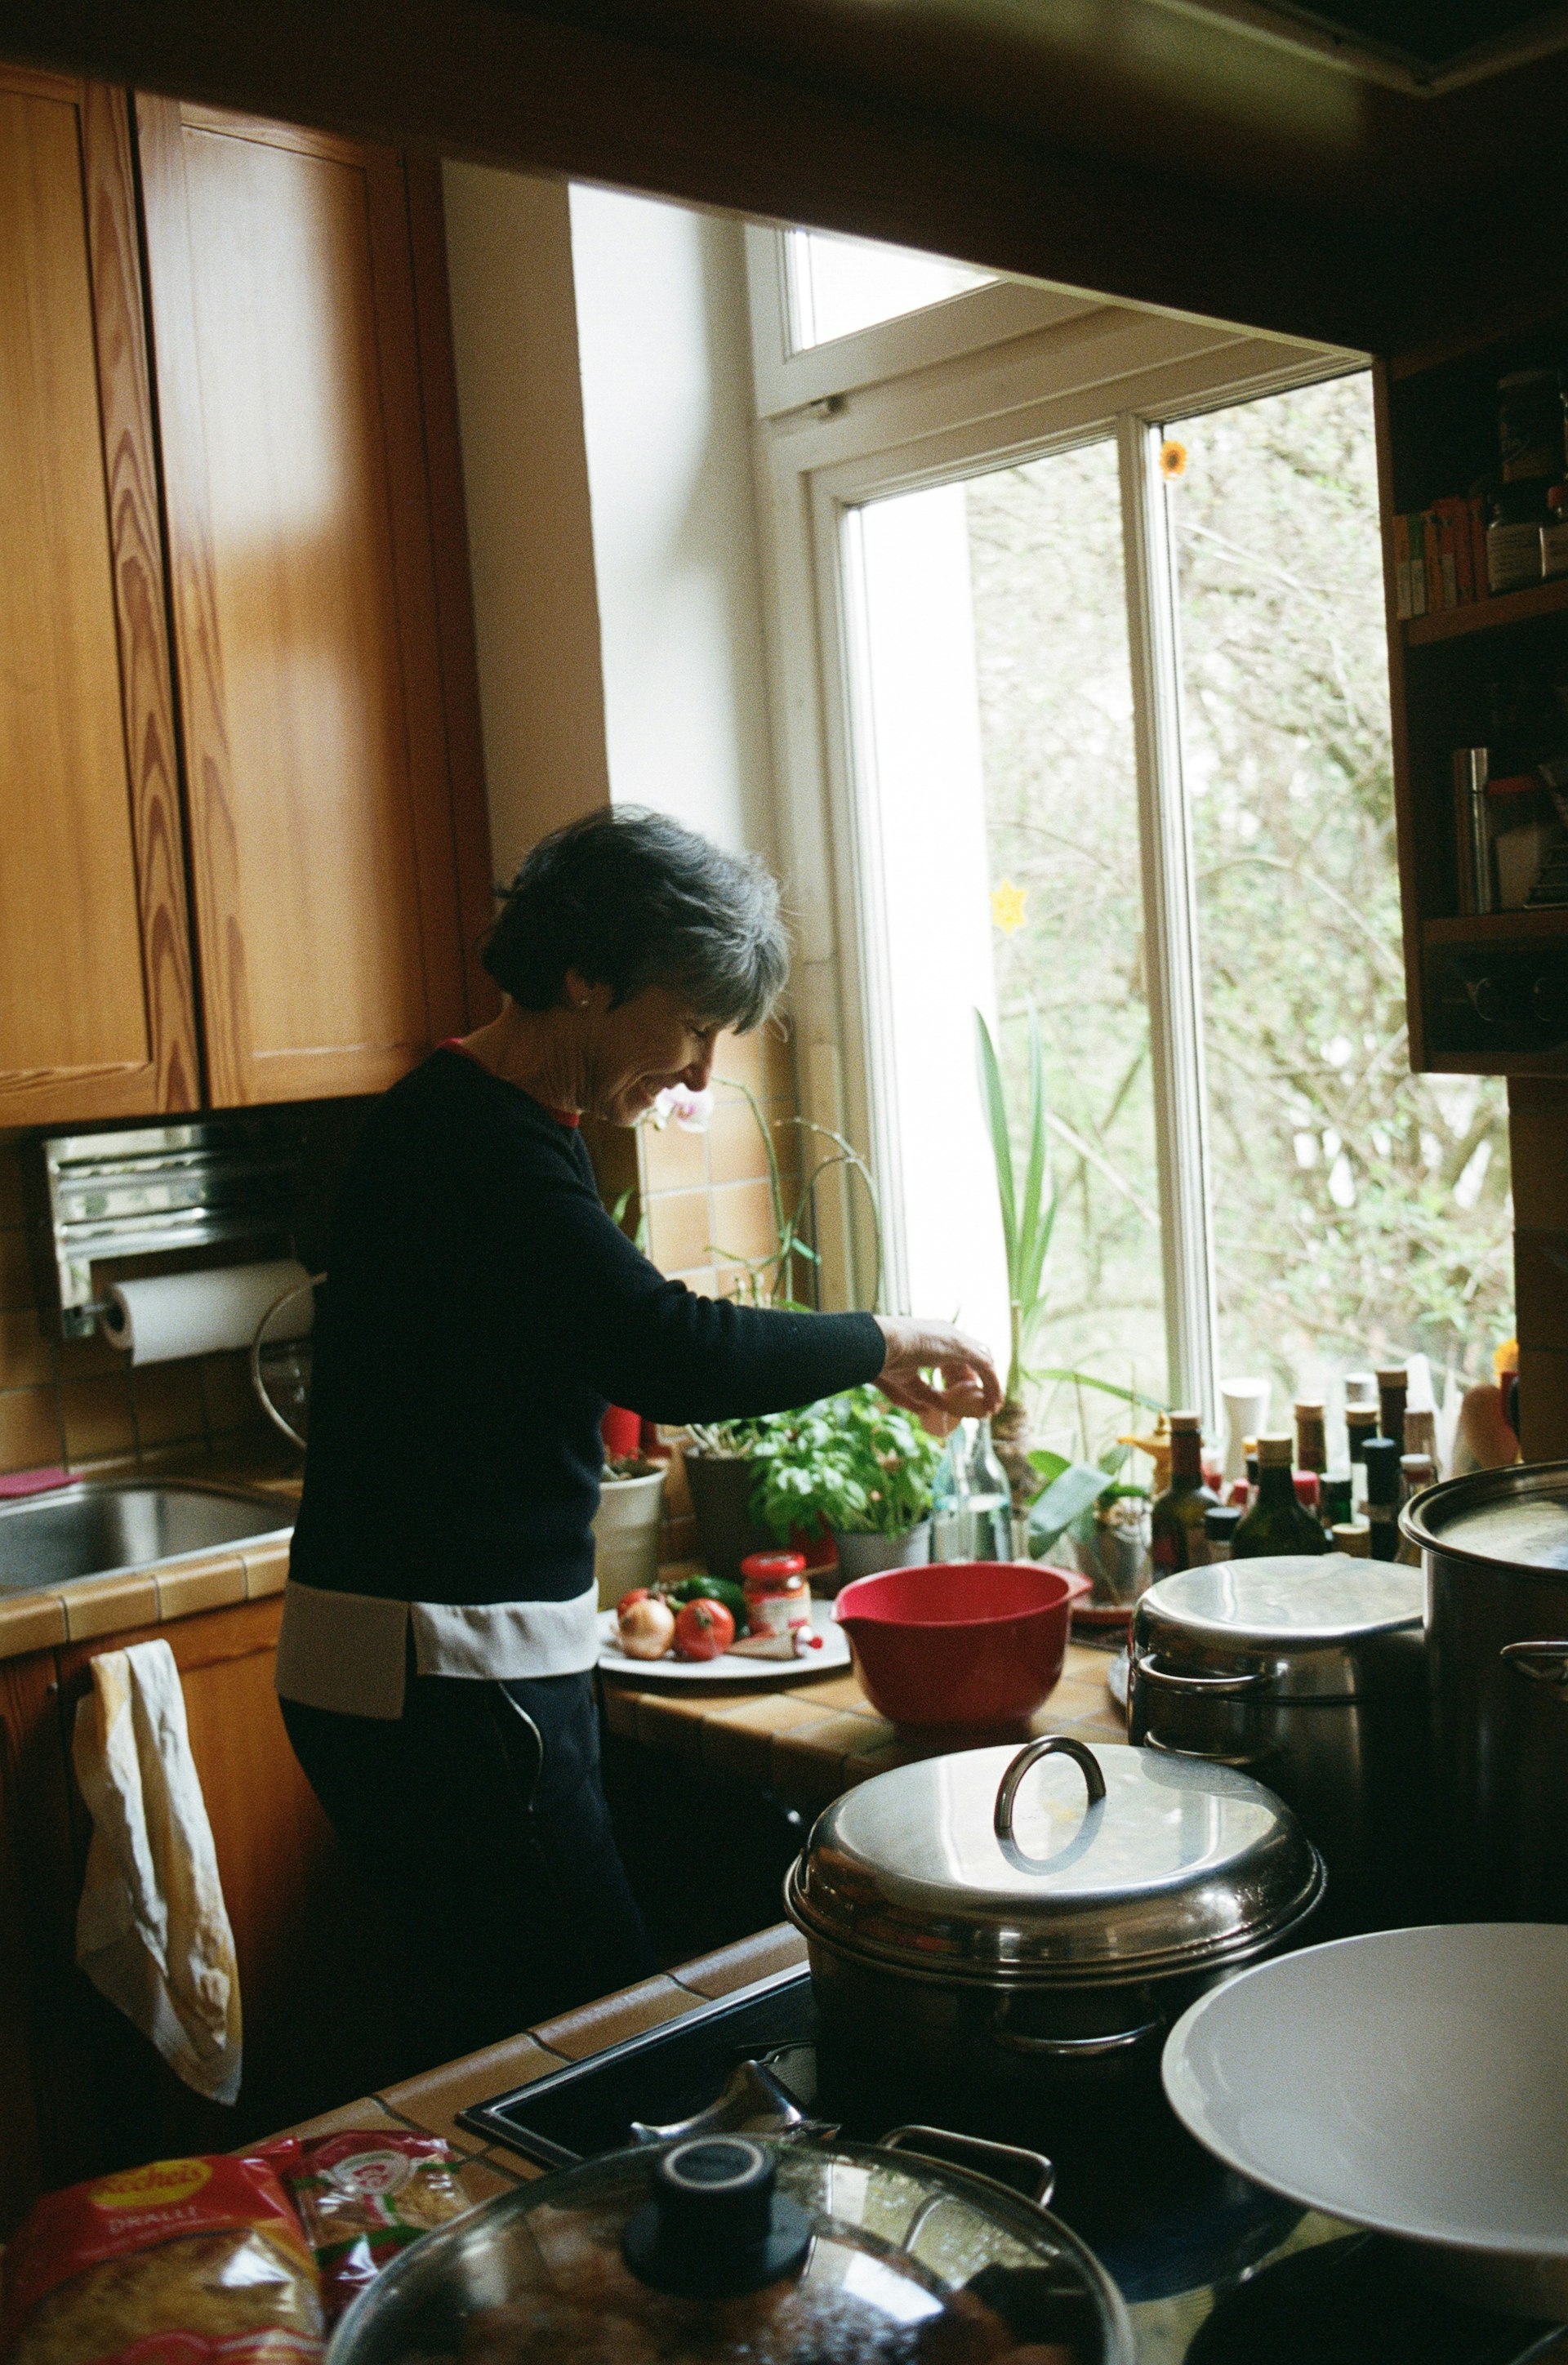 Frau kocht in einer Küche